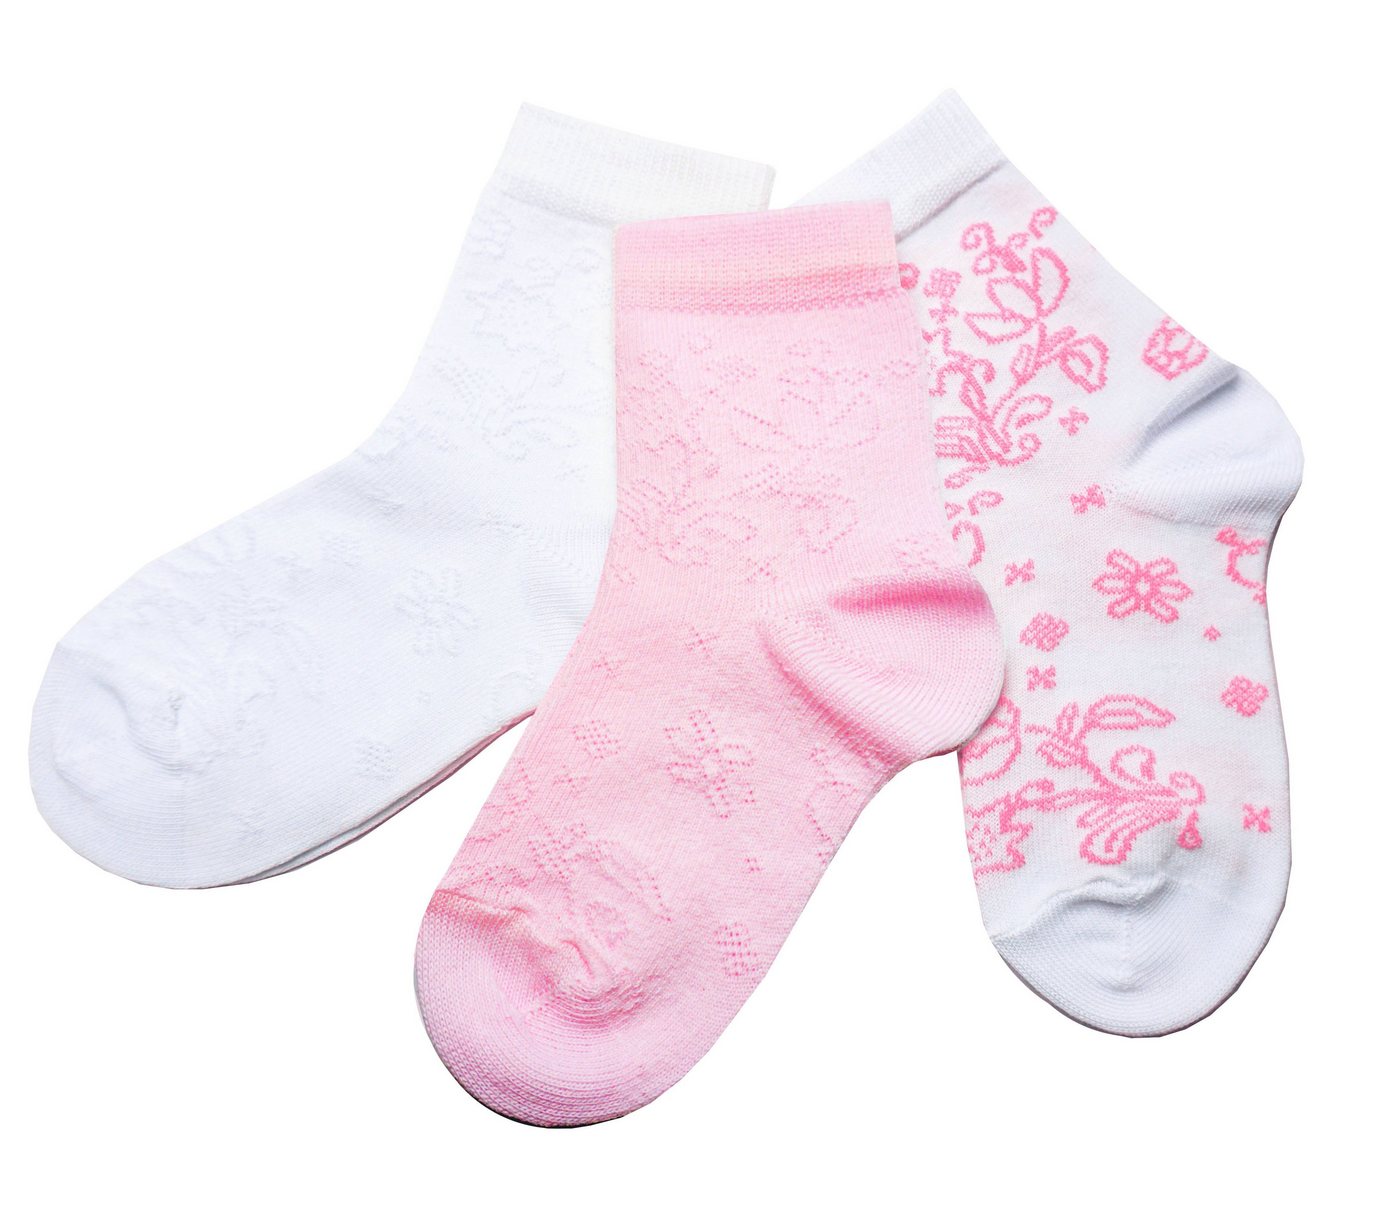 WERI SPEZIALS Strumpfhersteller GmbH Basicsocken Socken 3-er Sets für Mädchen mit verschiedenen Mustern (3-Paar) von WERI SPEZIALS Strumpfhersteller GmbH